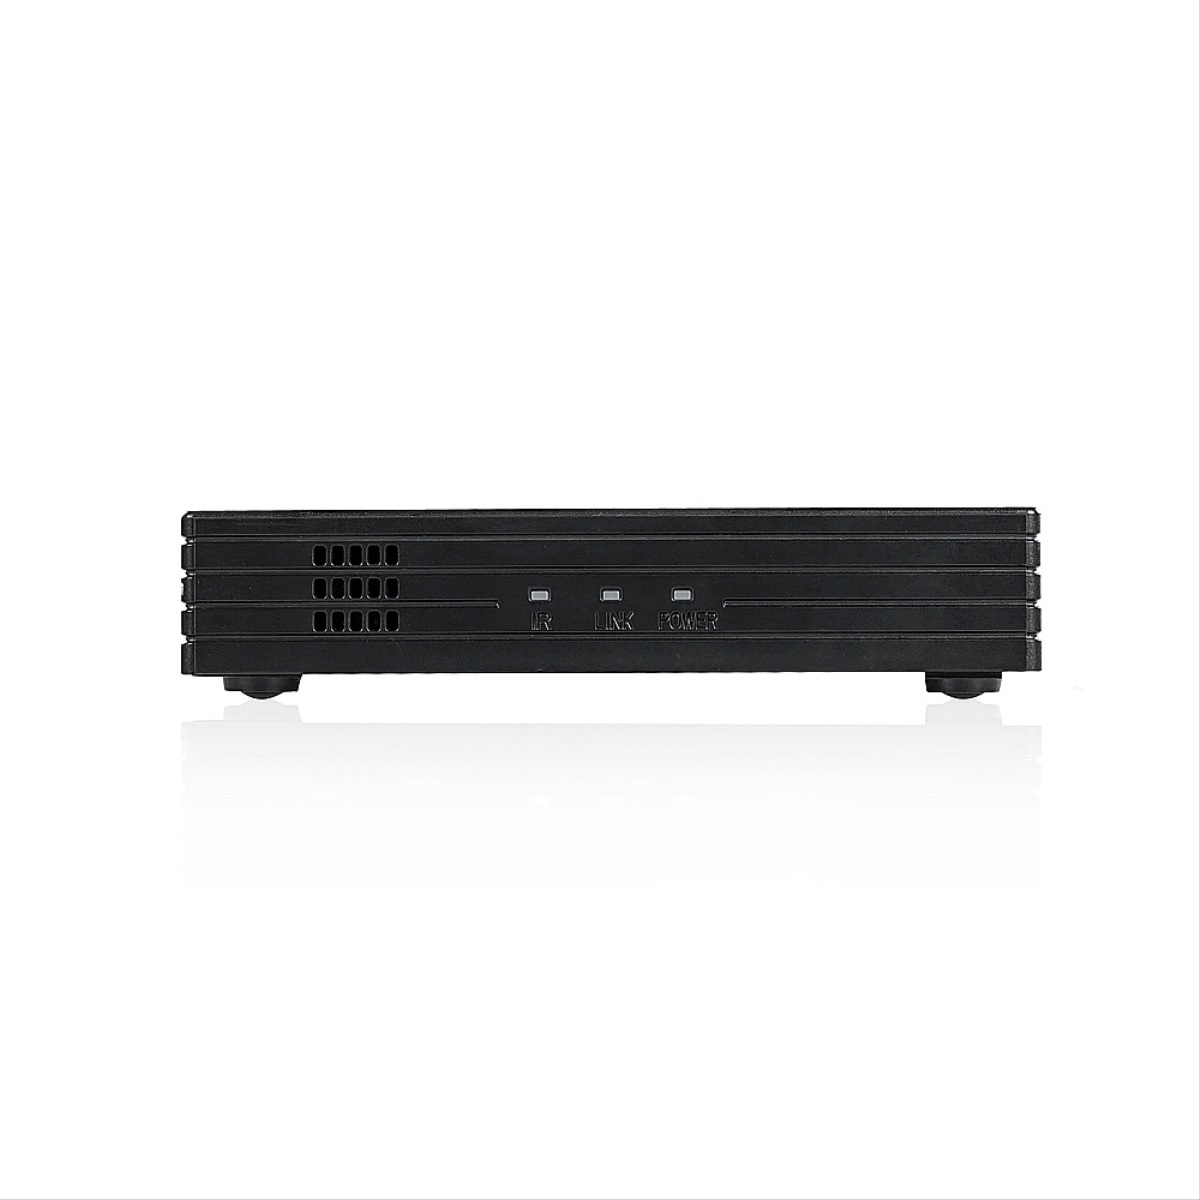 MAXIMUS 5.0 mit DVB-S2, HD Receiver Fernbedienung und Schwarz) Box Sat-Receiver TV - Wlan HDMI (PVR-Funktion